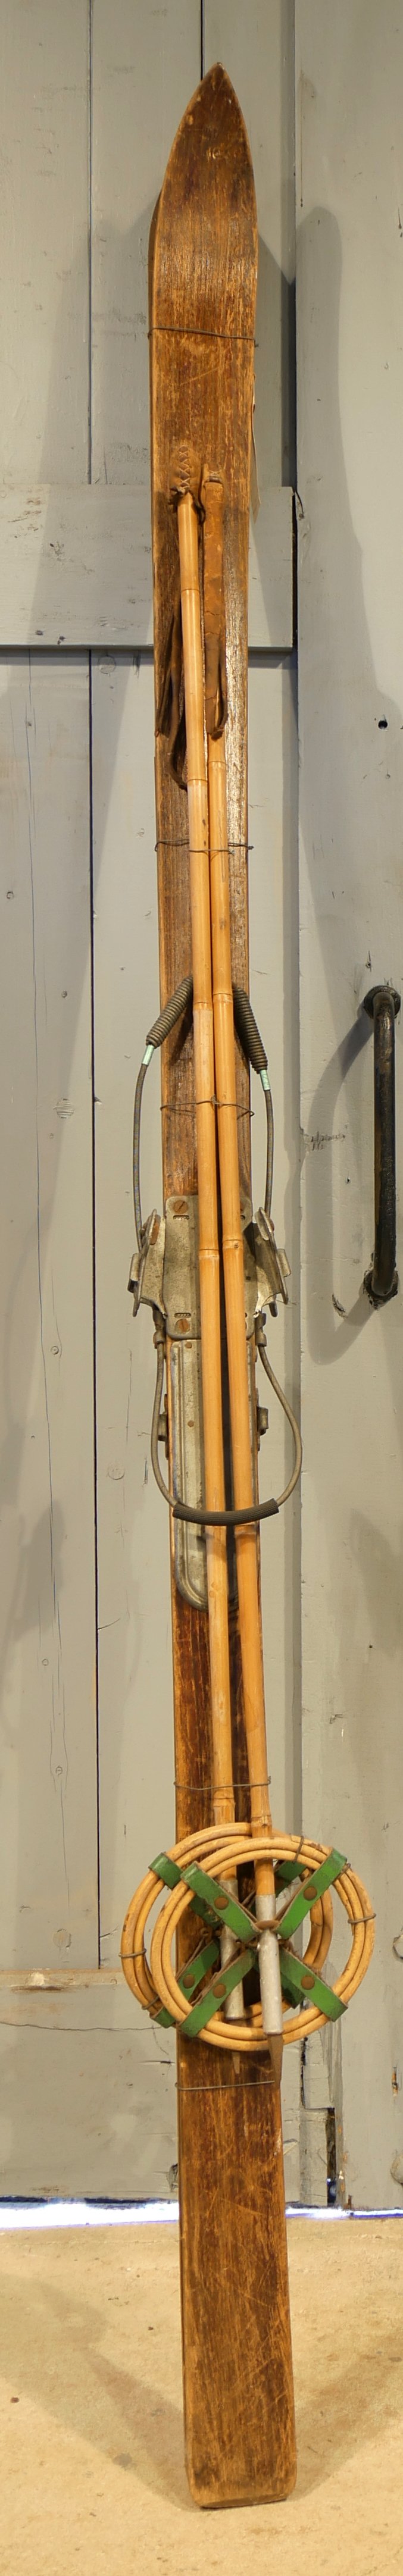 Ski mit Kabelzugbindung 1 (Freilichtmuseum Roscheider Hof CC0)